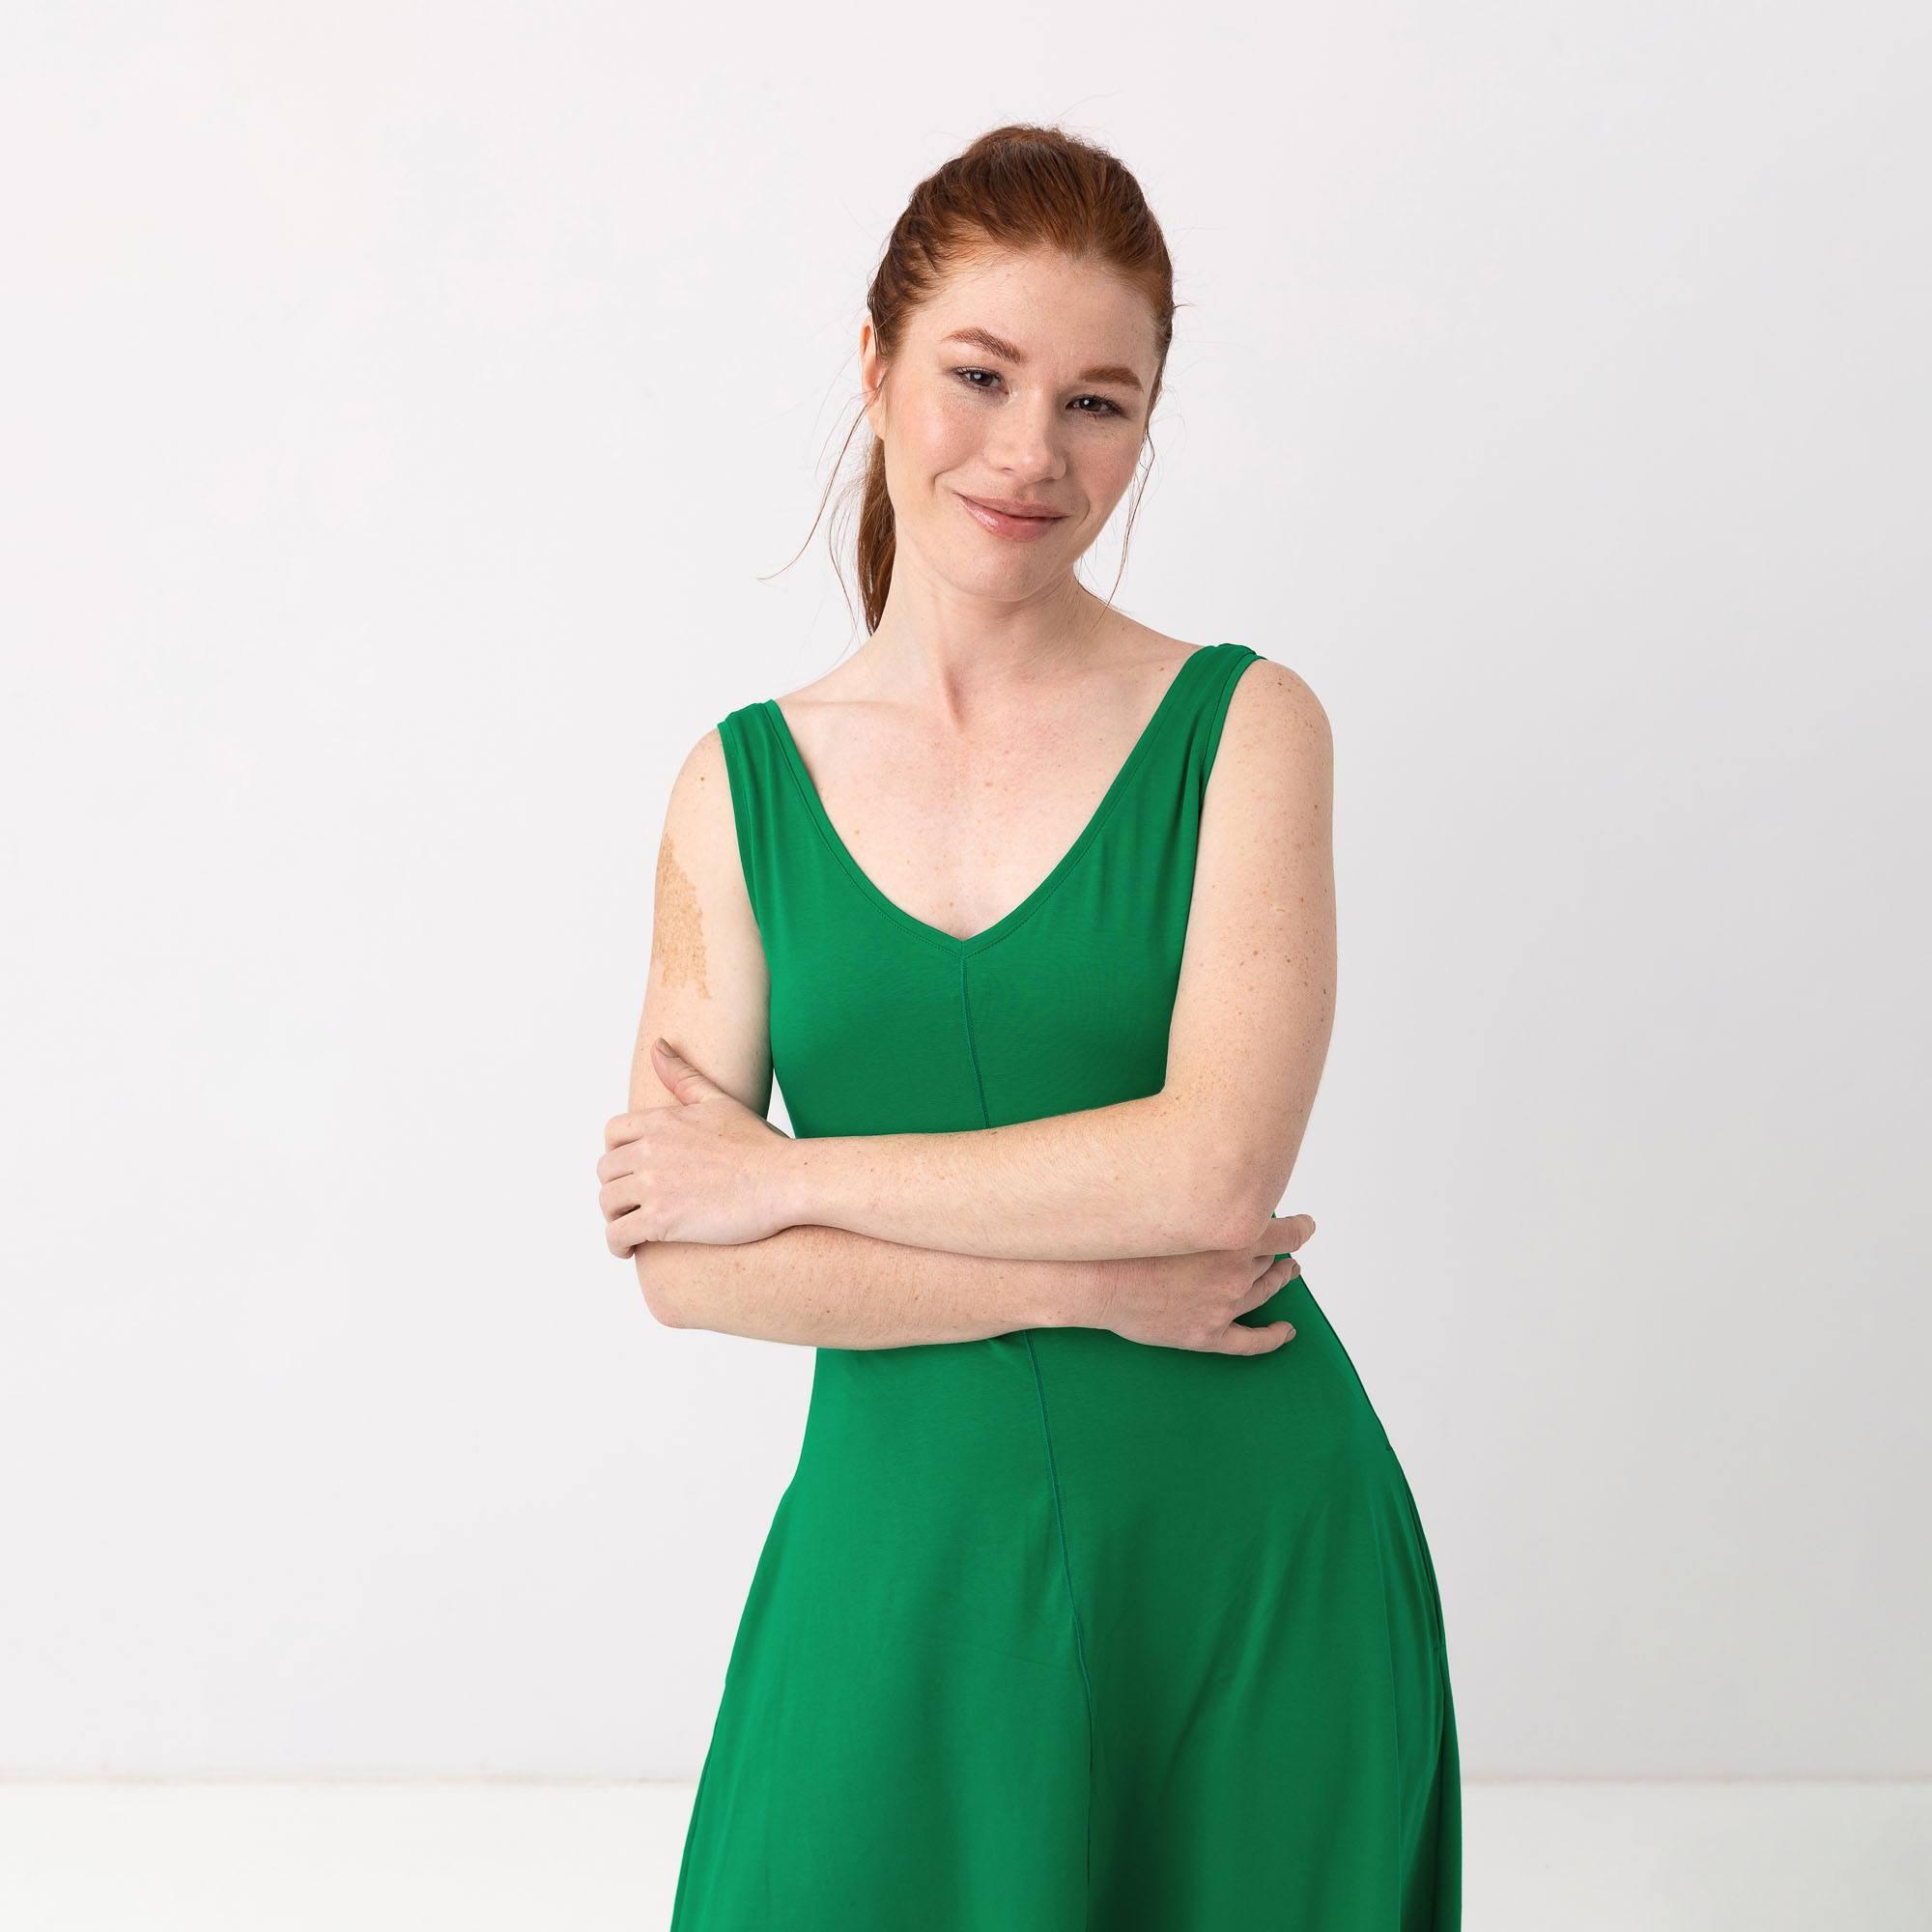 Zielona sukienka midi bez rękawów